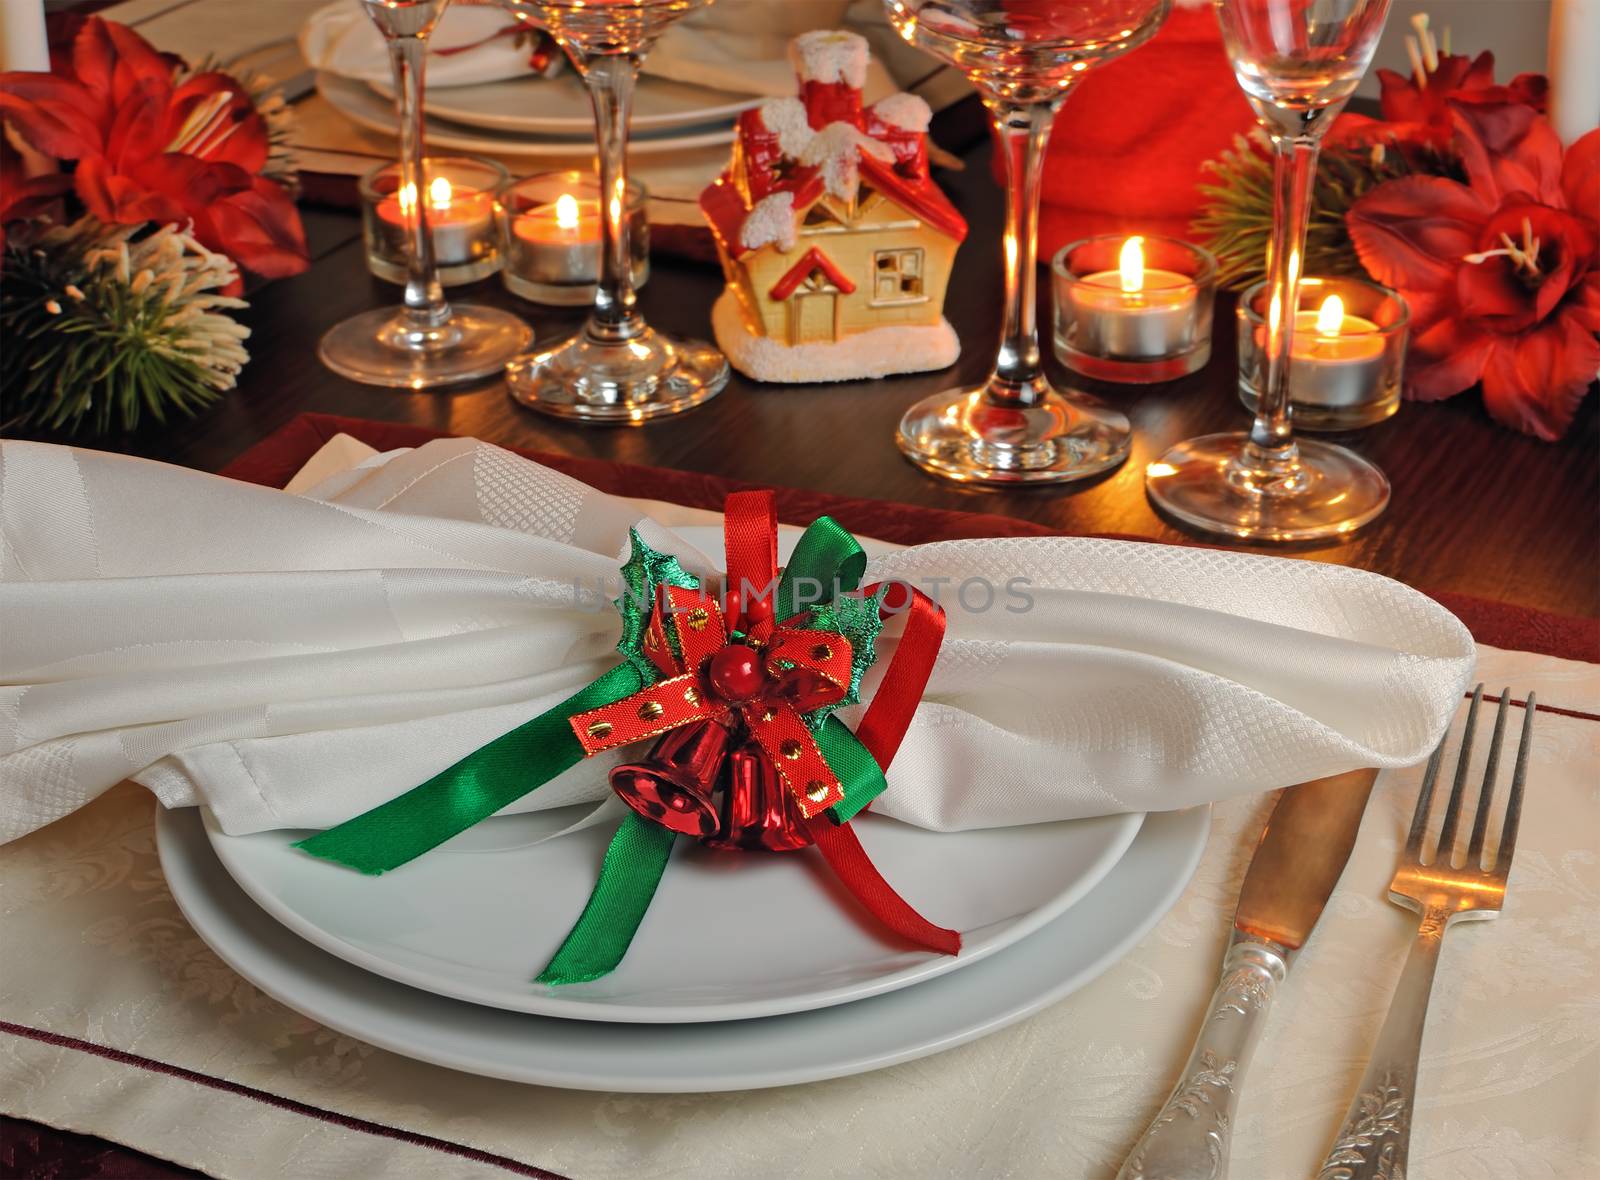 Festive napkin on the Christmas table